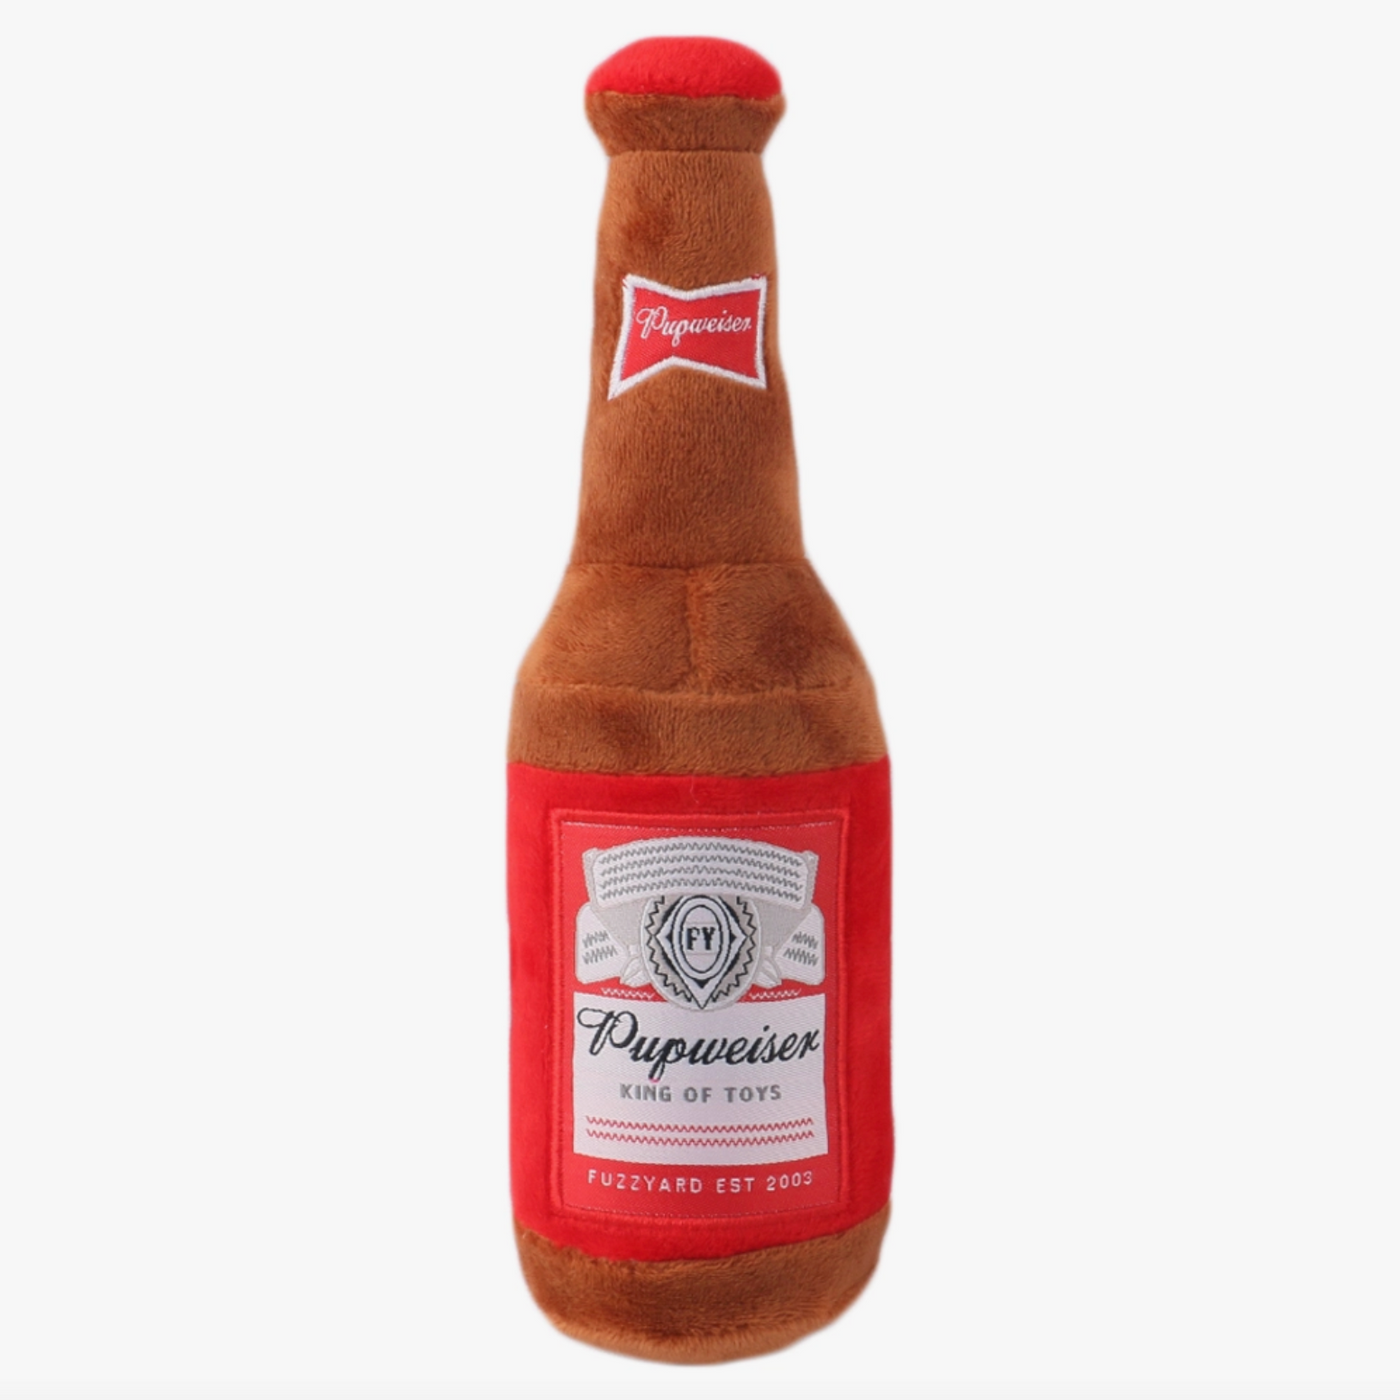 Pupweiser Beer Bottle Toy